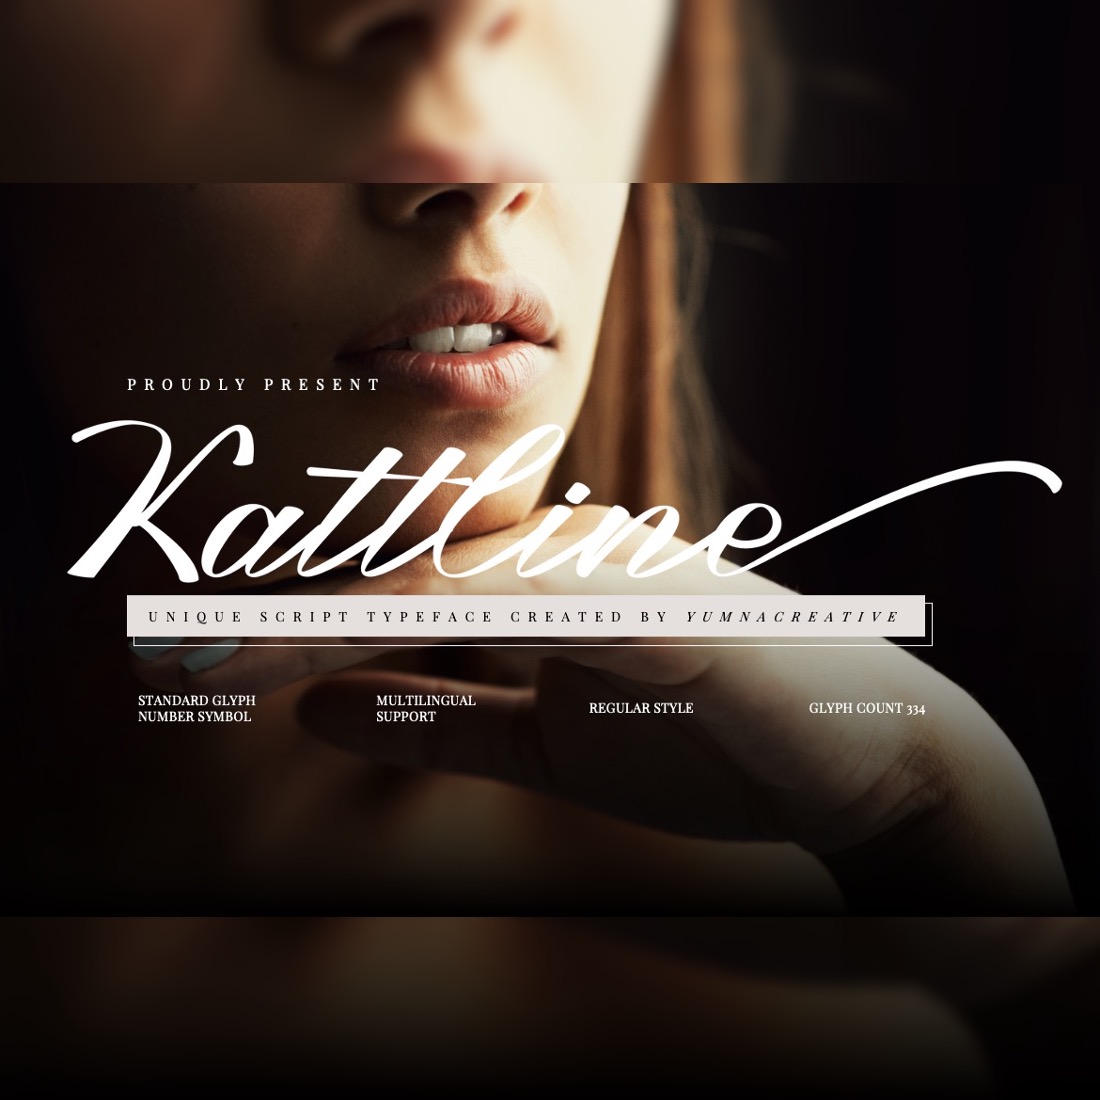 Kattline - Unique Script Font cover image.